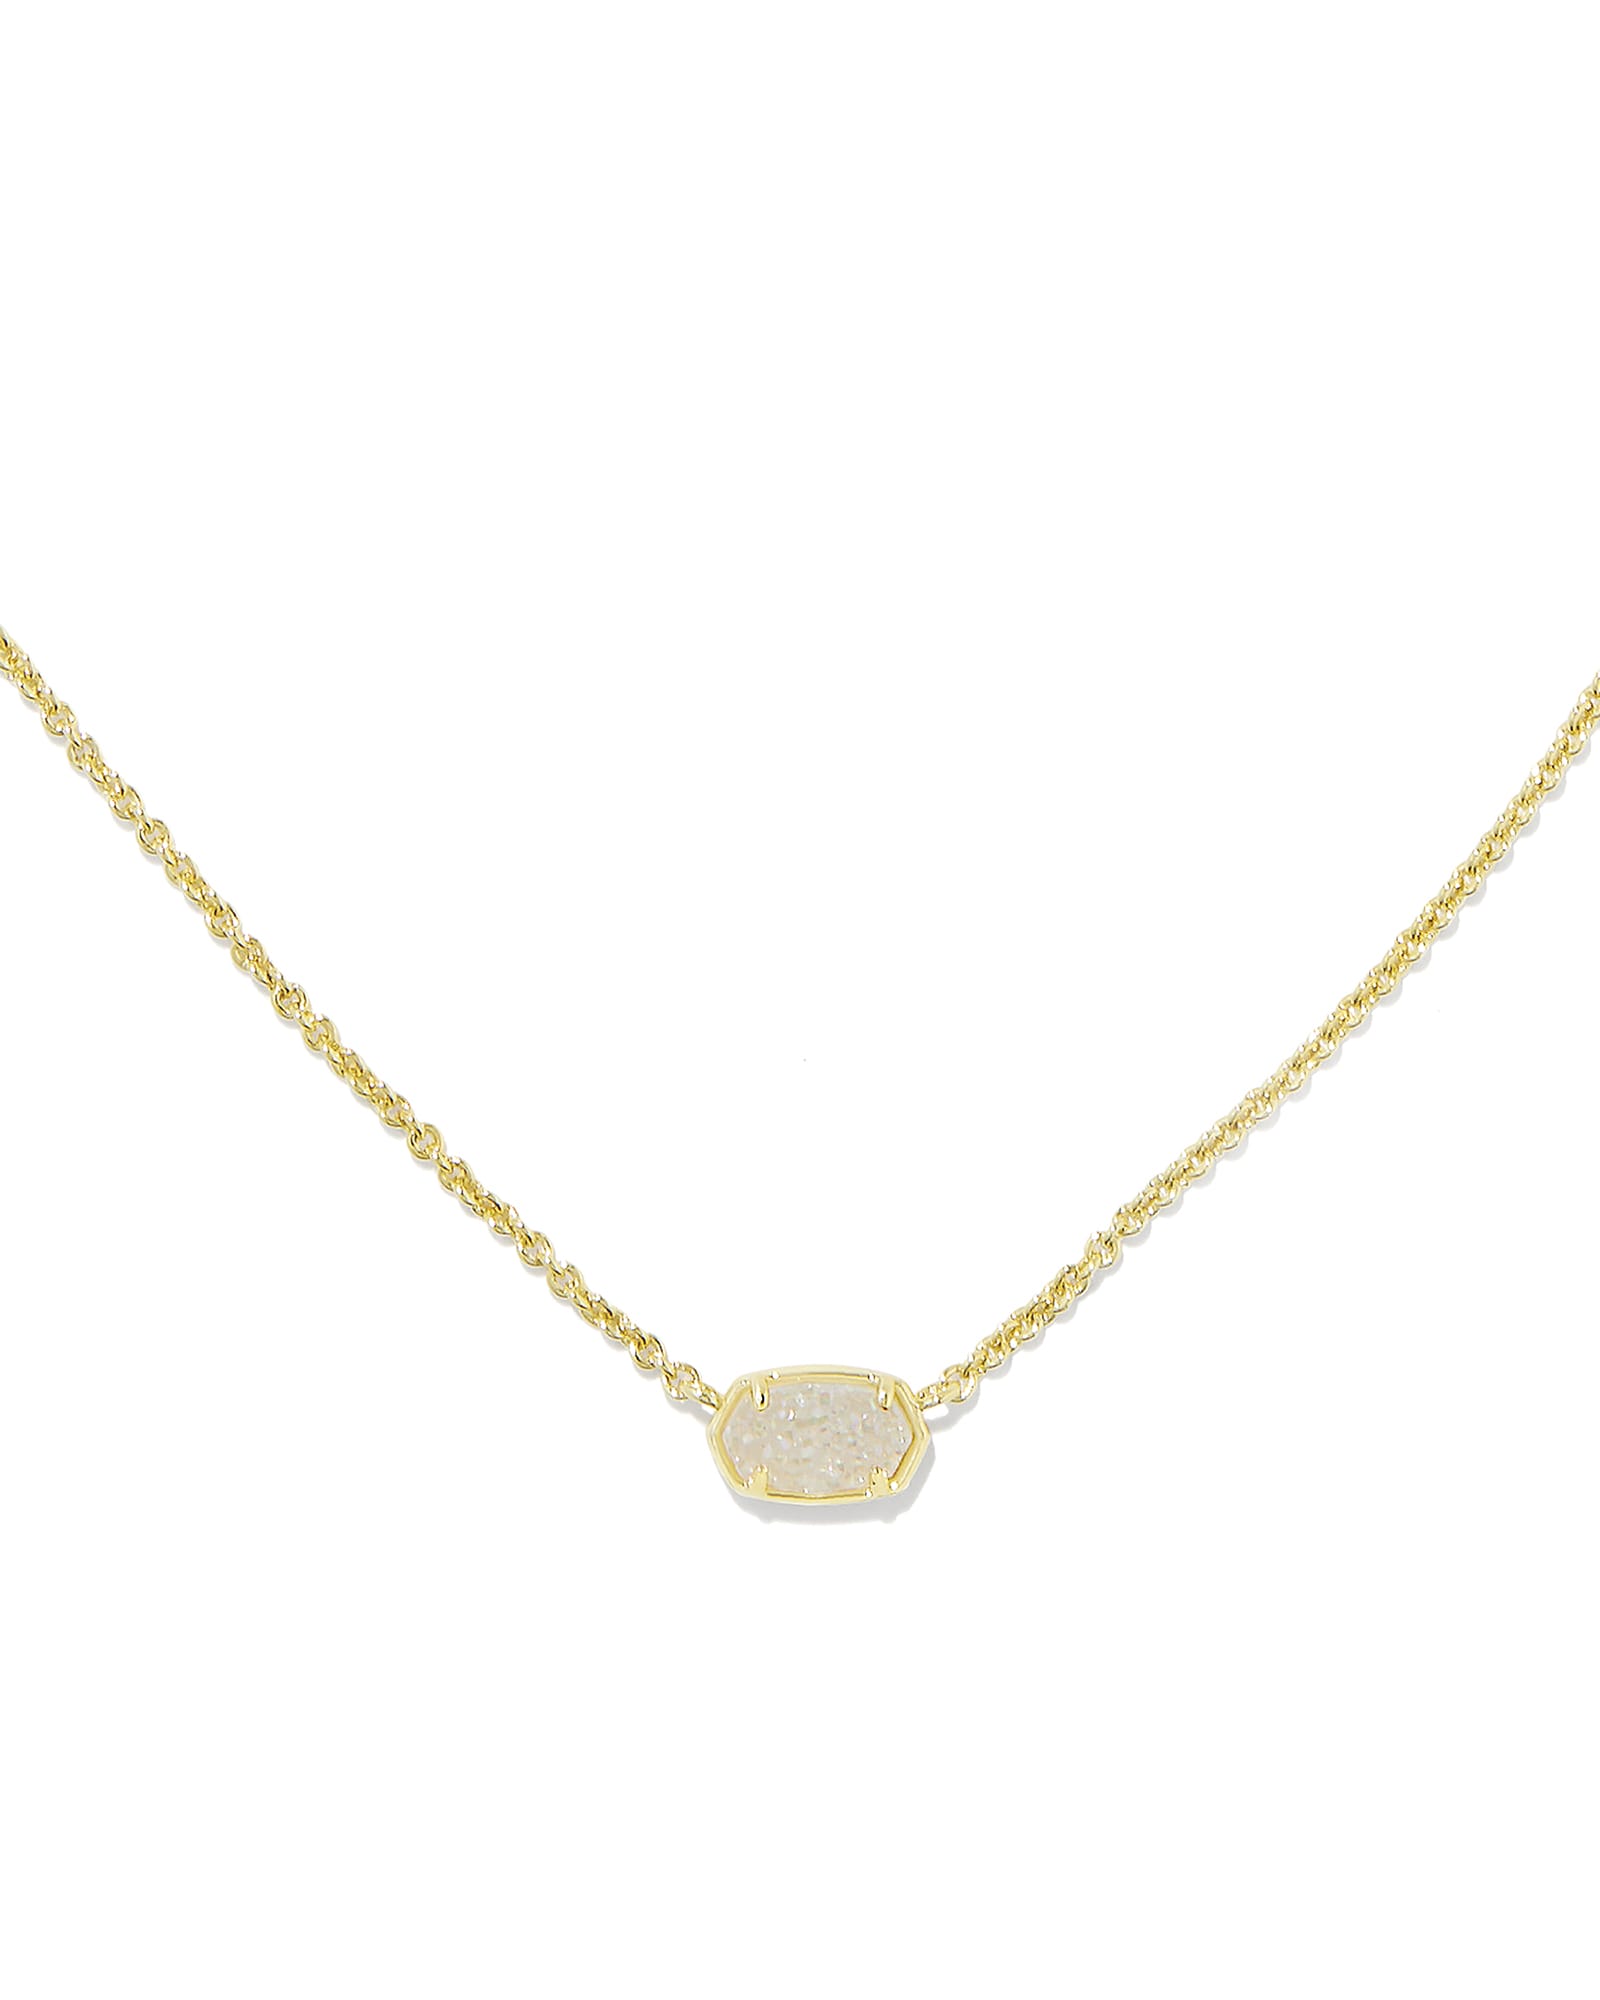 Louis Vuitton Upside Down LV Pendant Necklace - Brass Pendant Necklace,  Necklaces - LOU723081